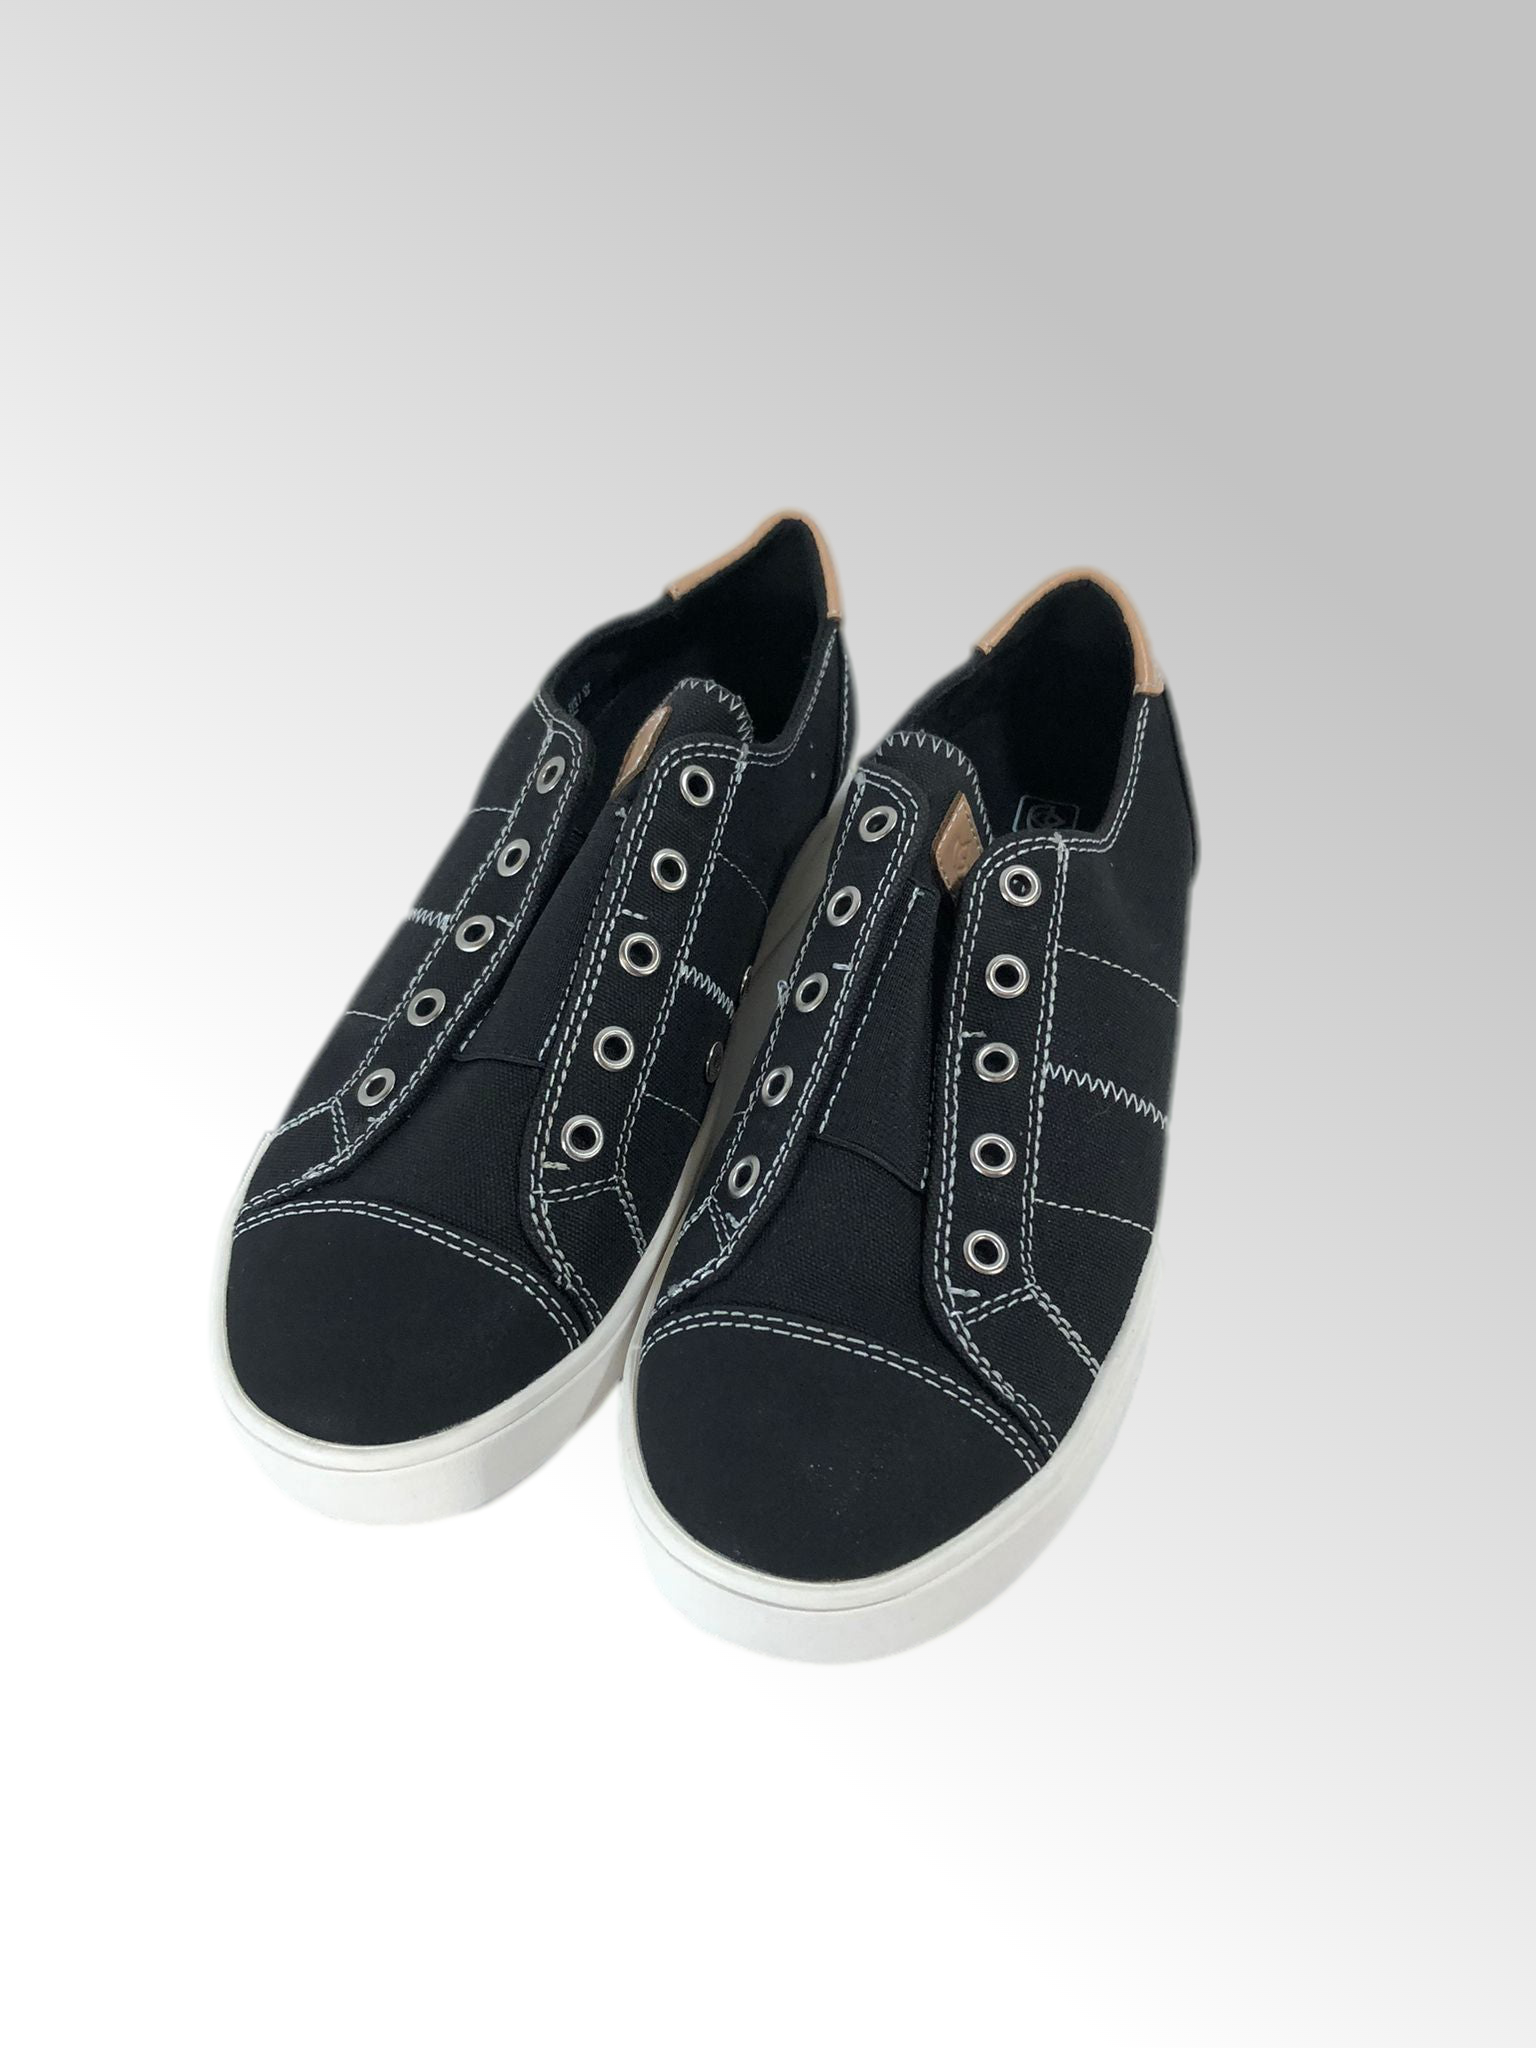 Spenco Orthotic Canvas Slip-On Shoes - Malibu